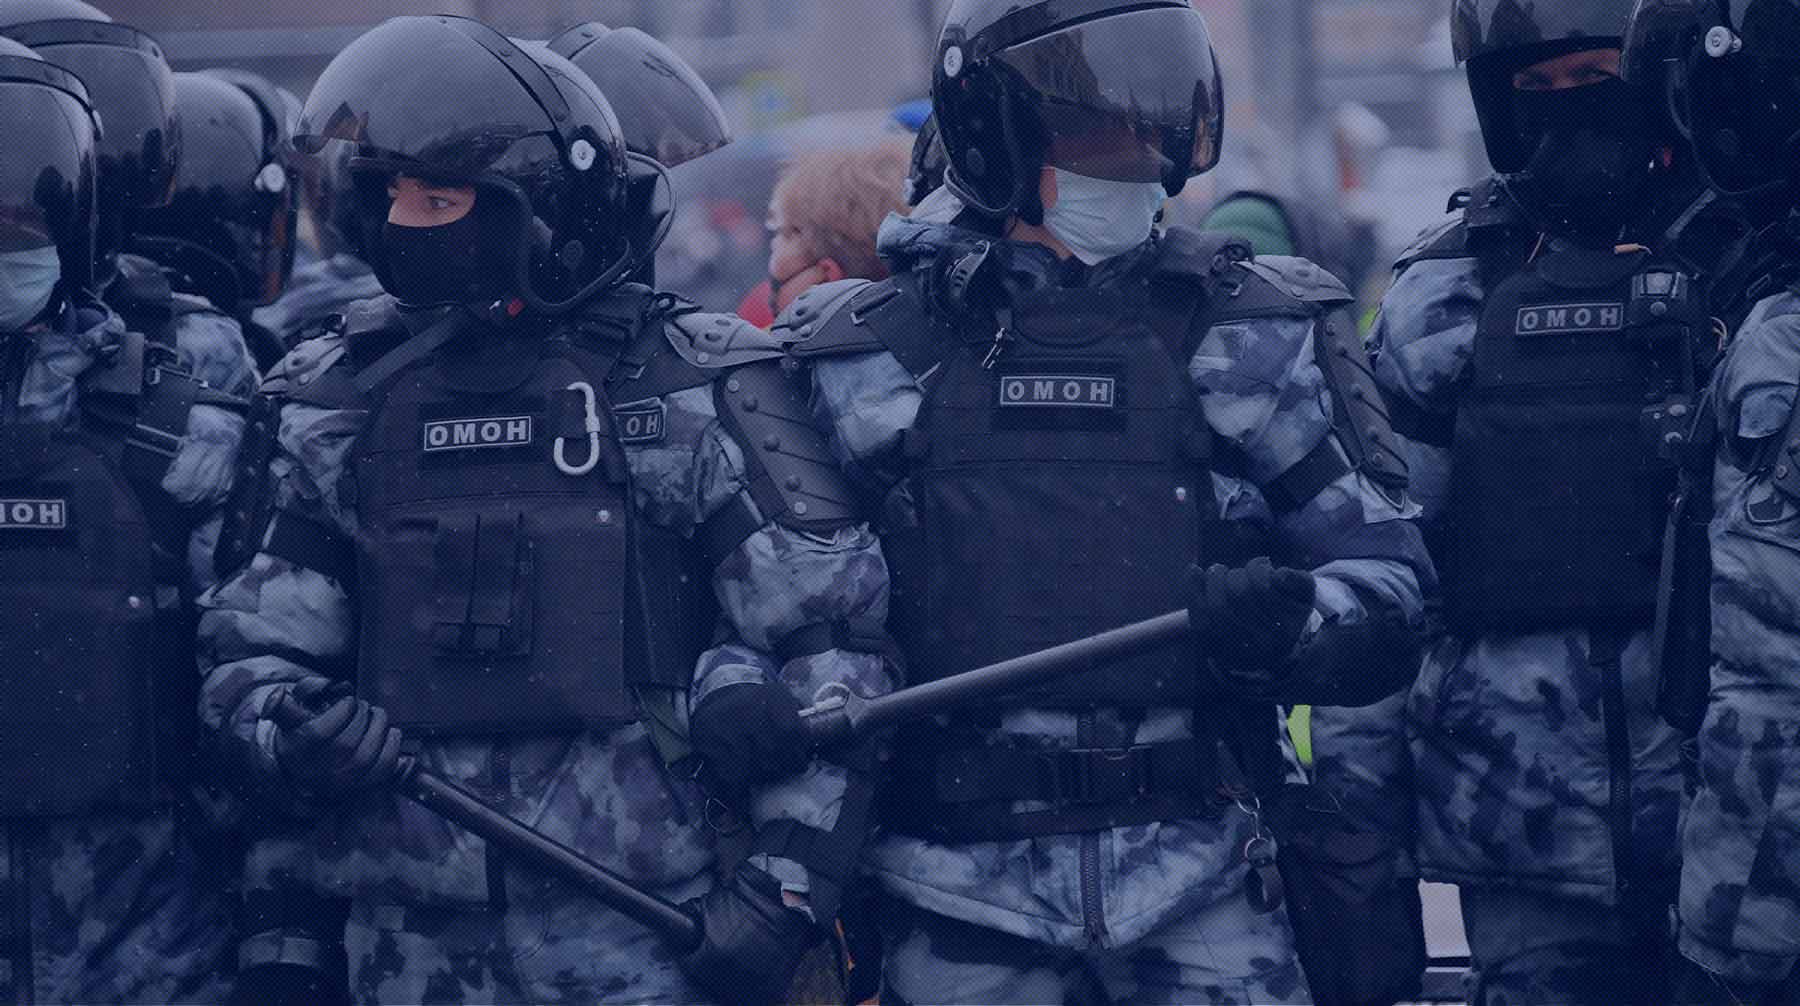 Dailystorm - ОМОН разогнал устроивших потасовку десантников и активистов движения «Лев против»